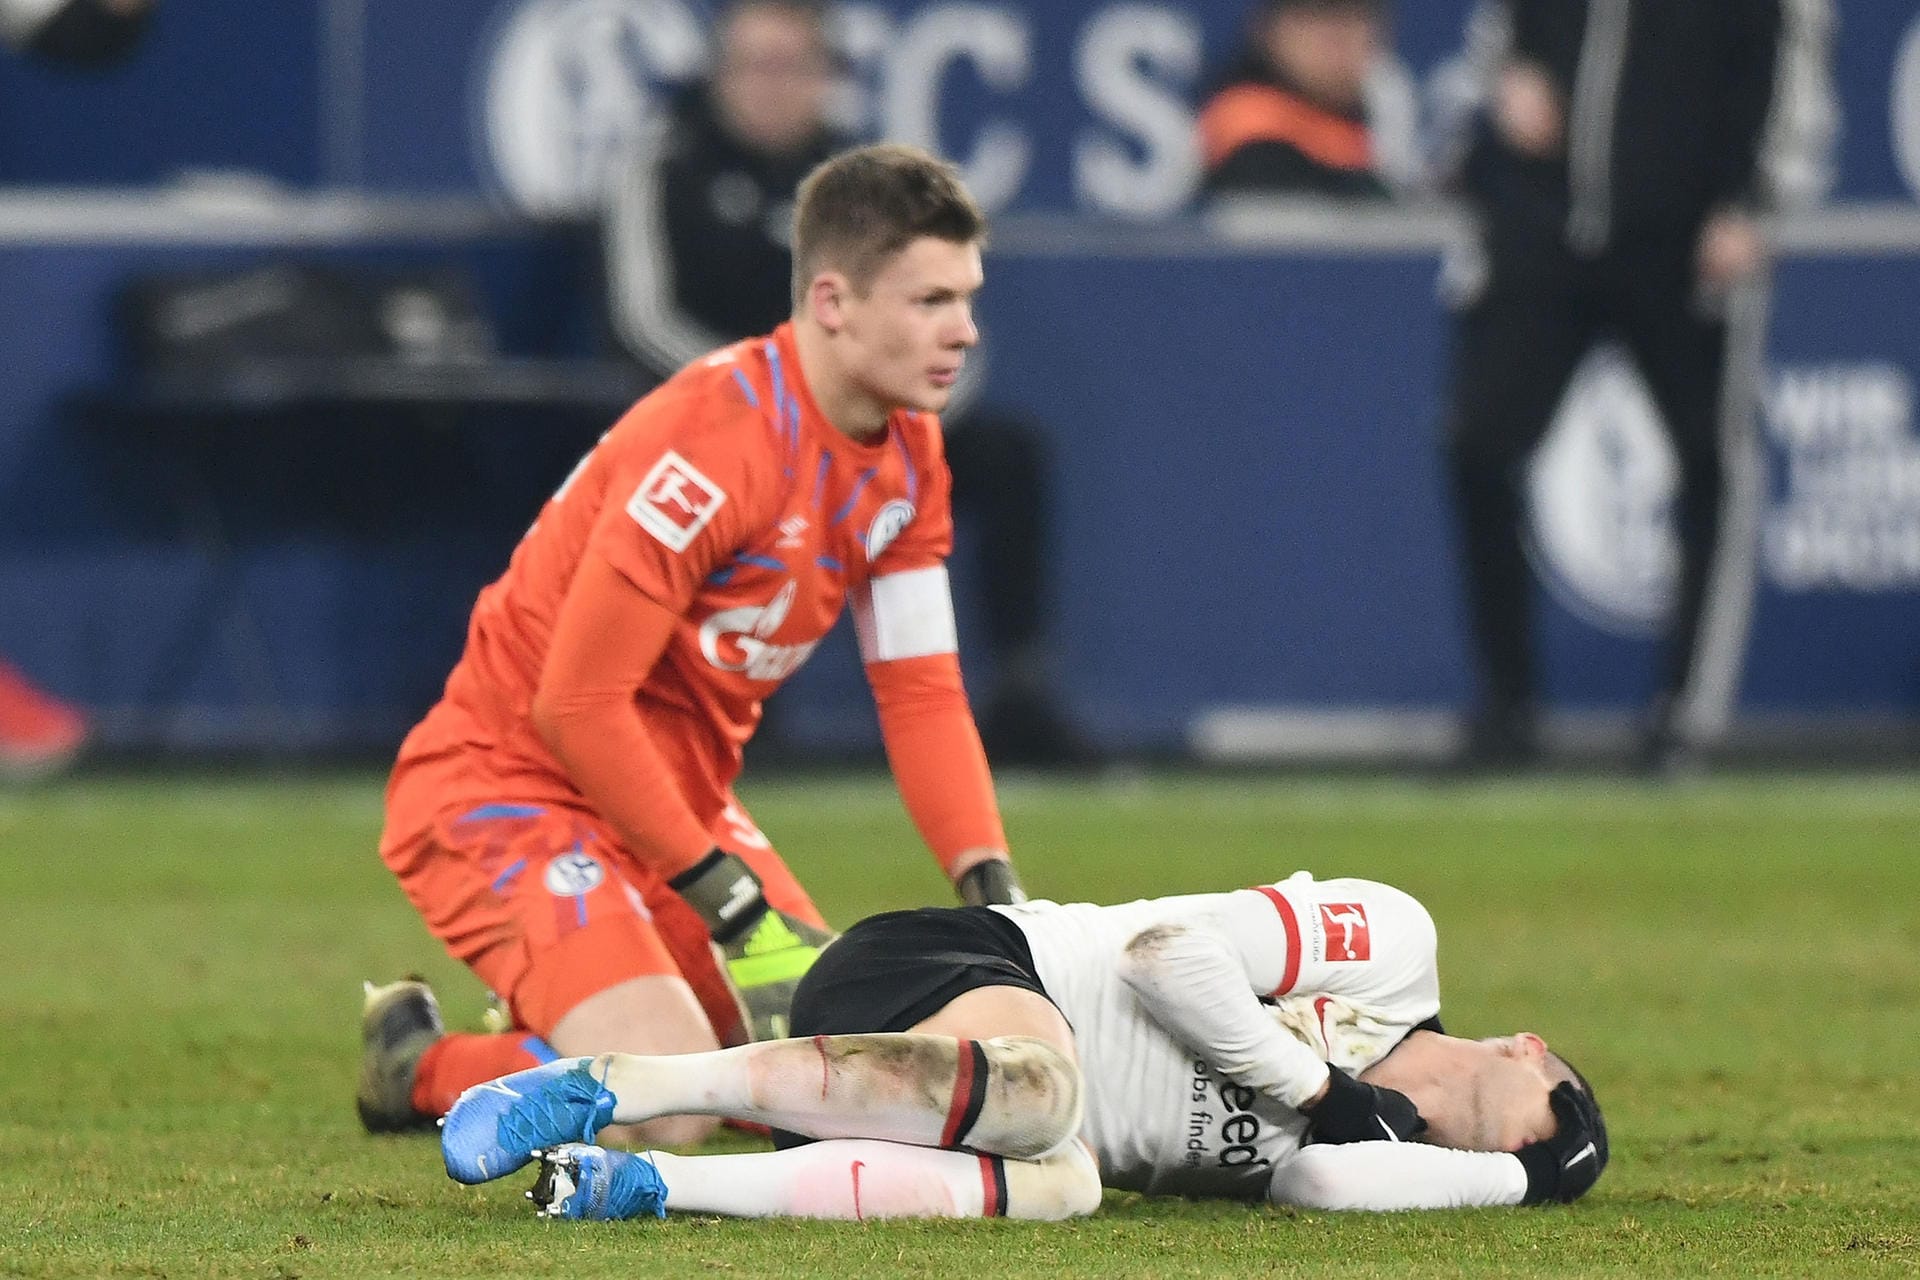 Schalkes Torwart Alexander Nübel (l.) räumte beim Spiel gegen Eintracht Frankfurt Mijat Gaćinović ab. Der junge Keeper musste daraufhin das Feld verlassen. Am Ende gewannen die "Königsblauen" trotzdem mit 1:0. Doch was genau war passiert?